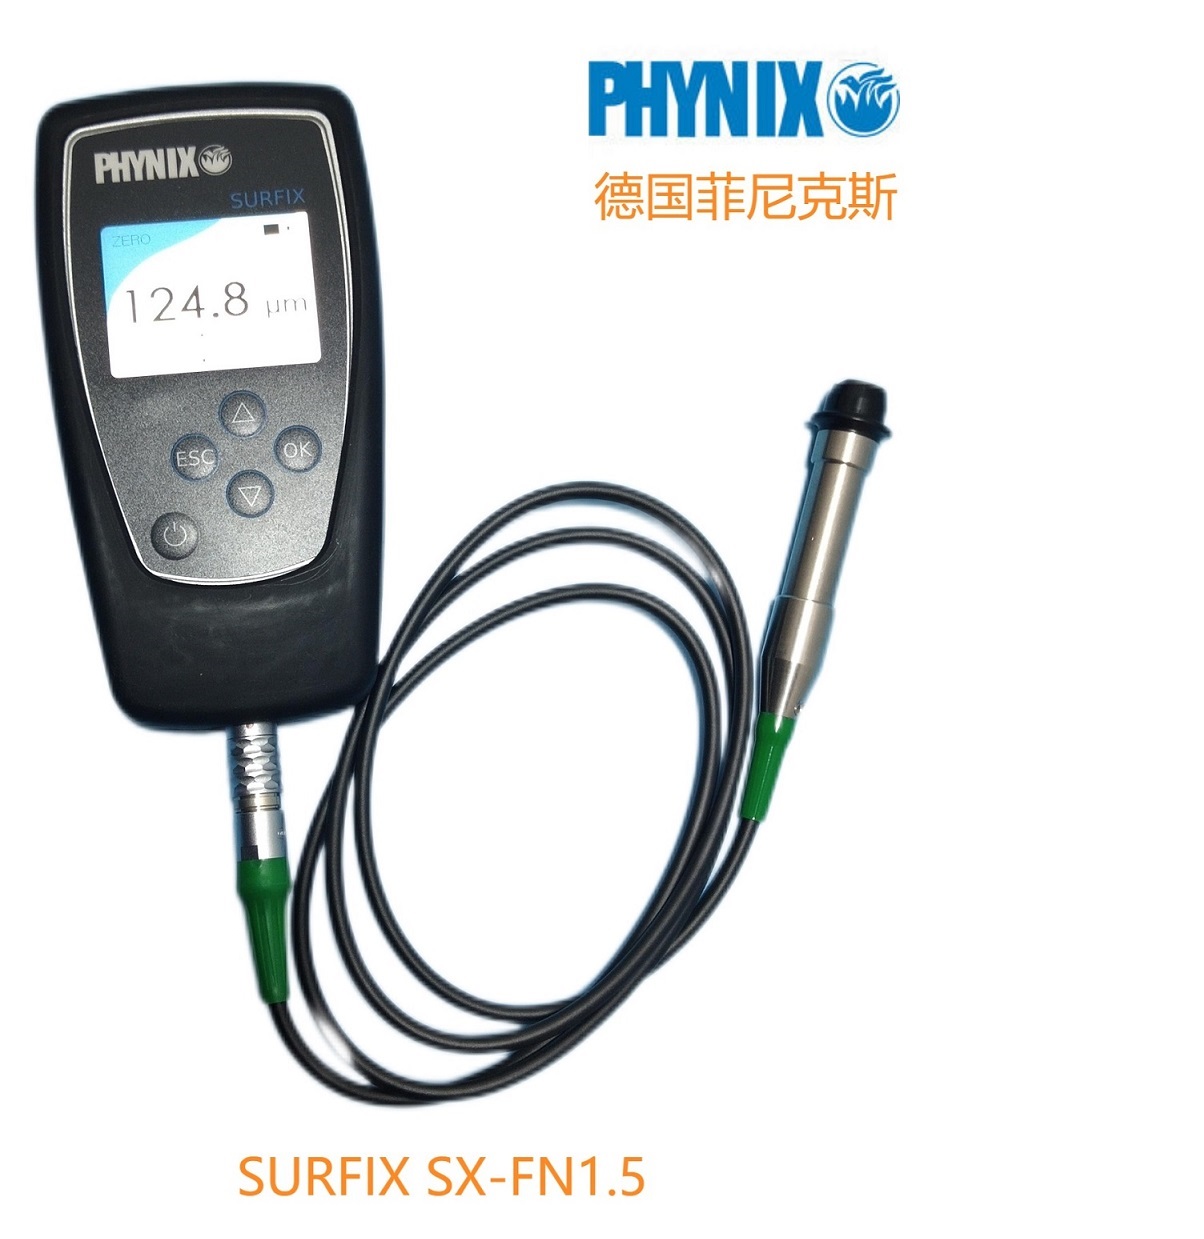 德国PHYNIX SURFIX SX-FN1.5漆膜测厚仪